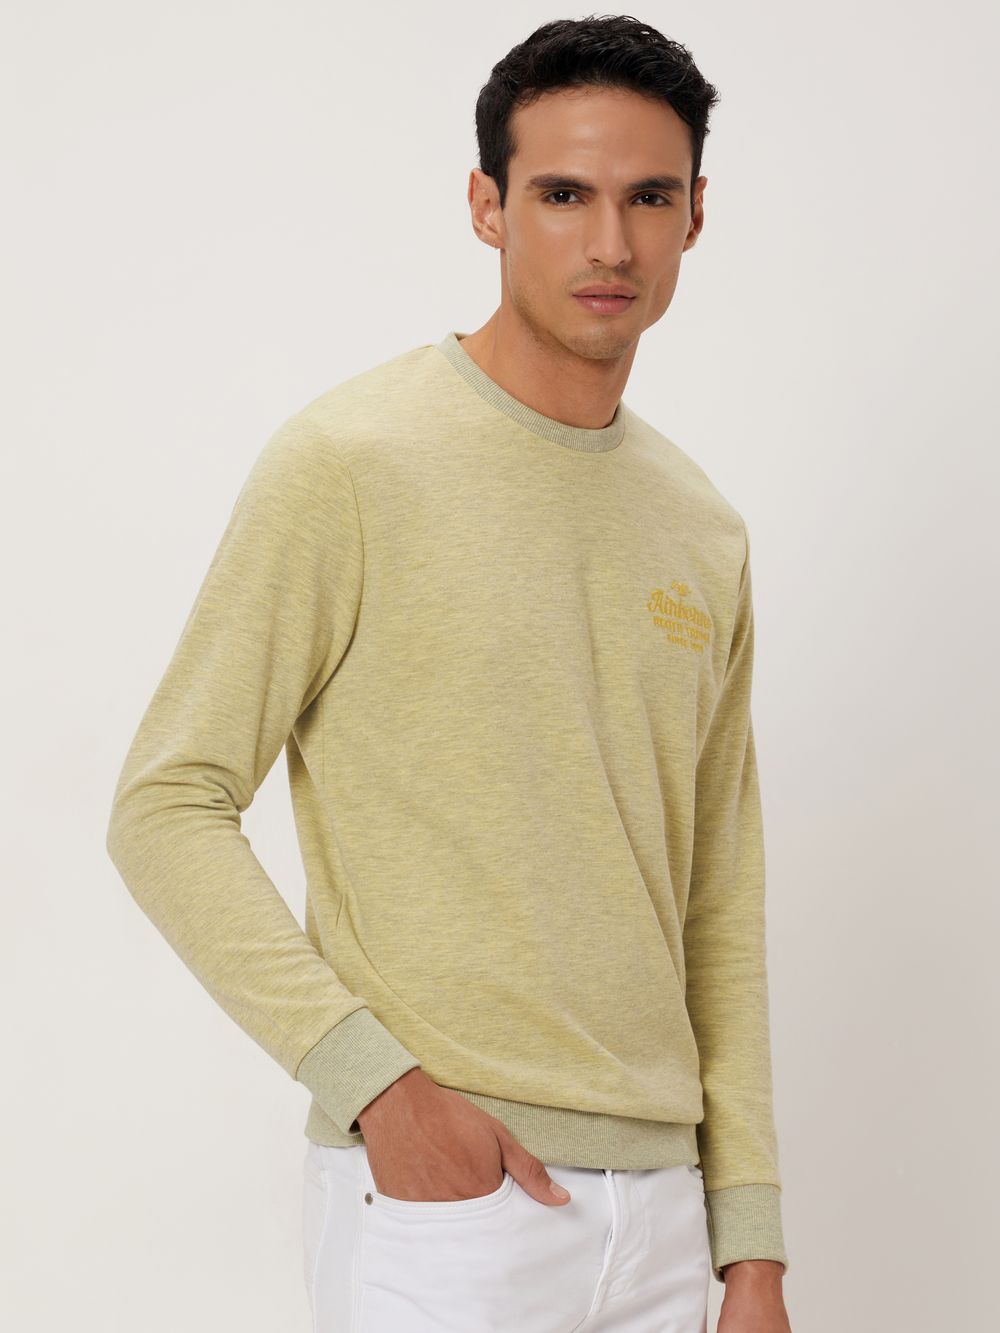 Yellow Embroidered Sweatshirt